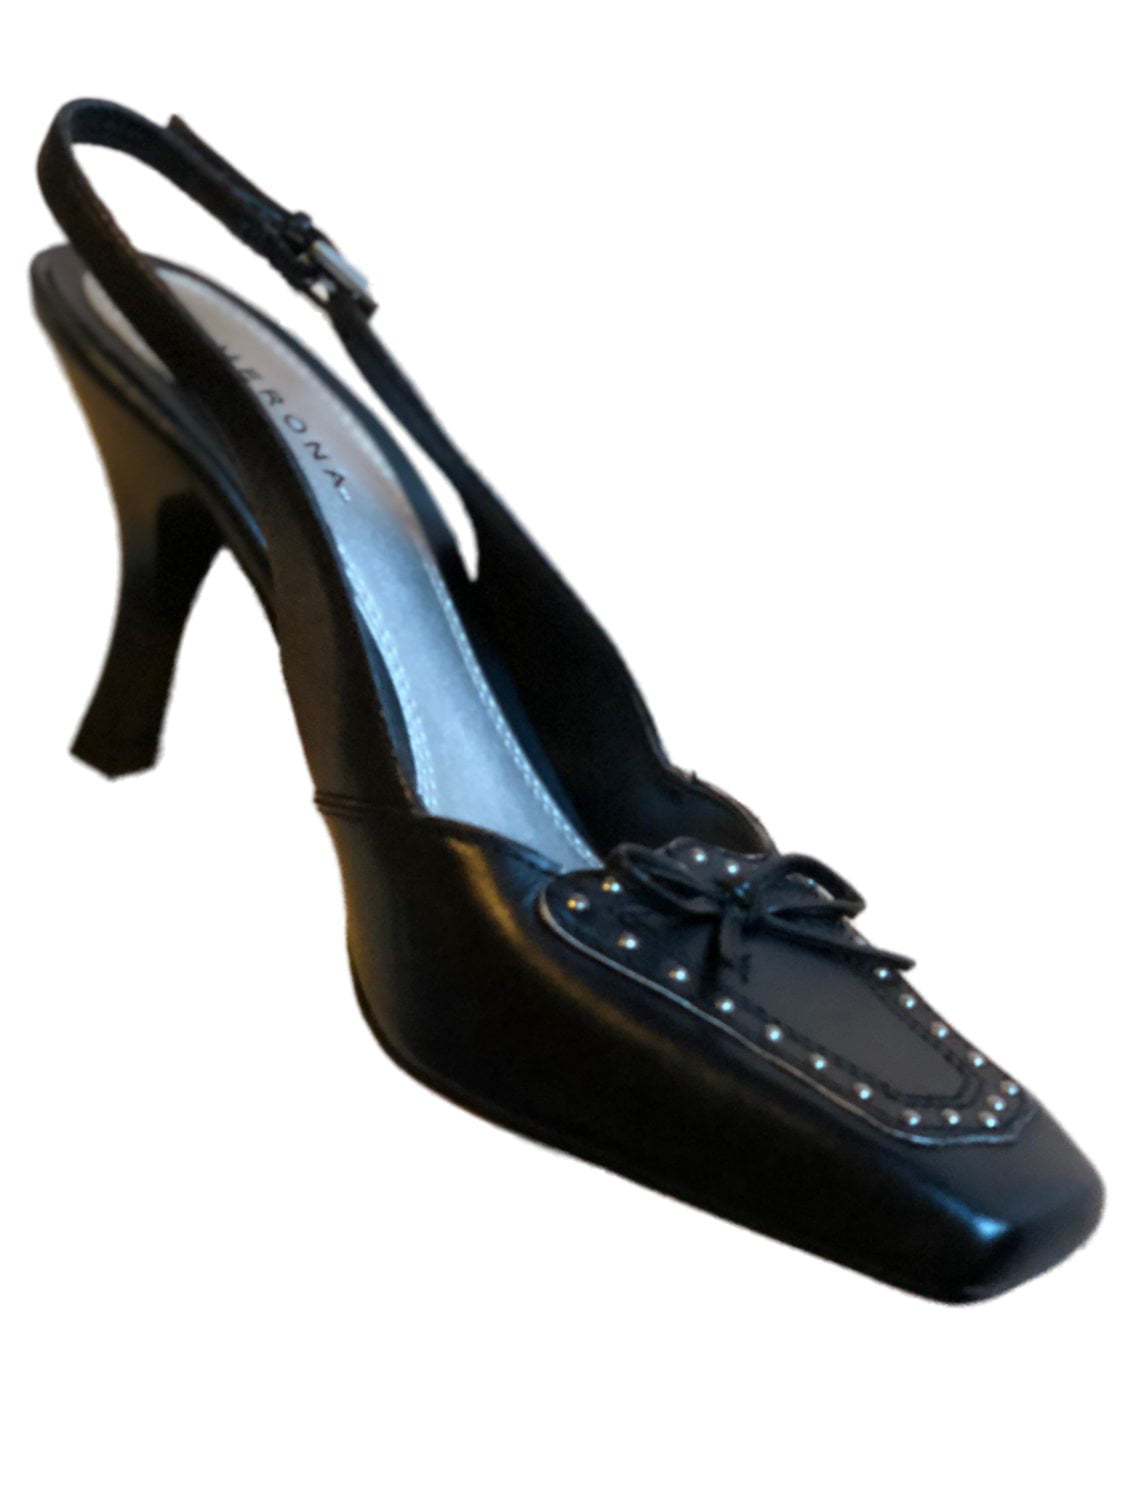 Buy > merona shoes heels > in stock